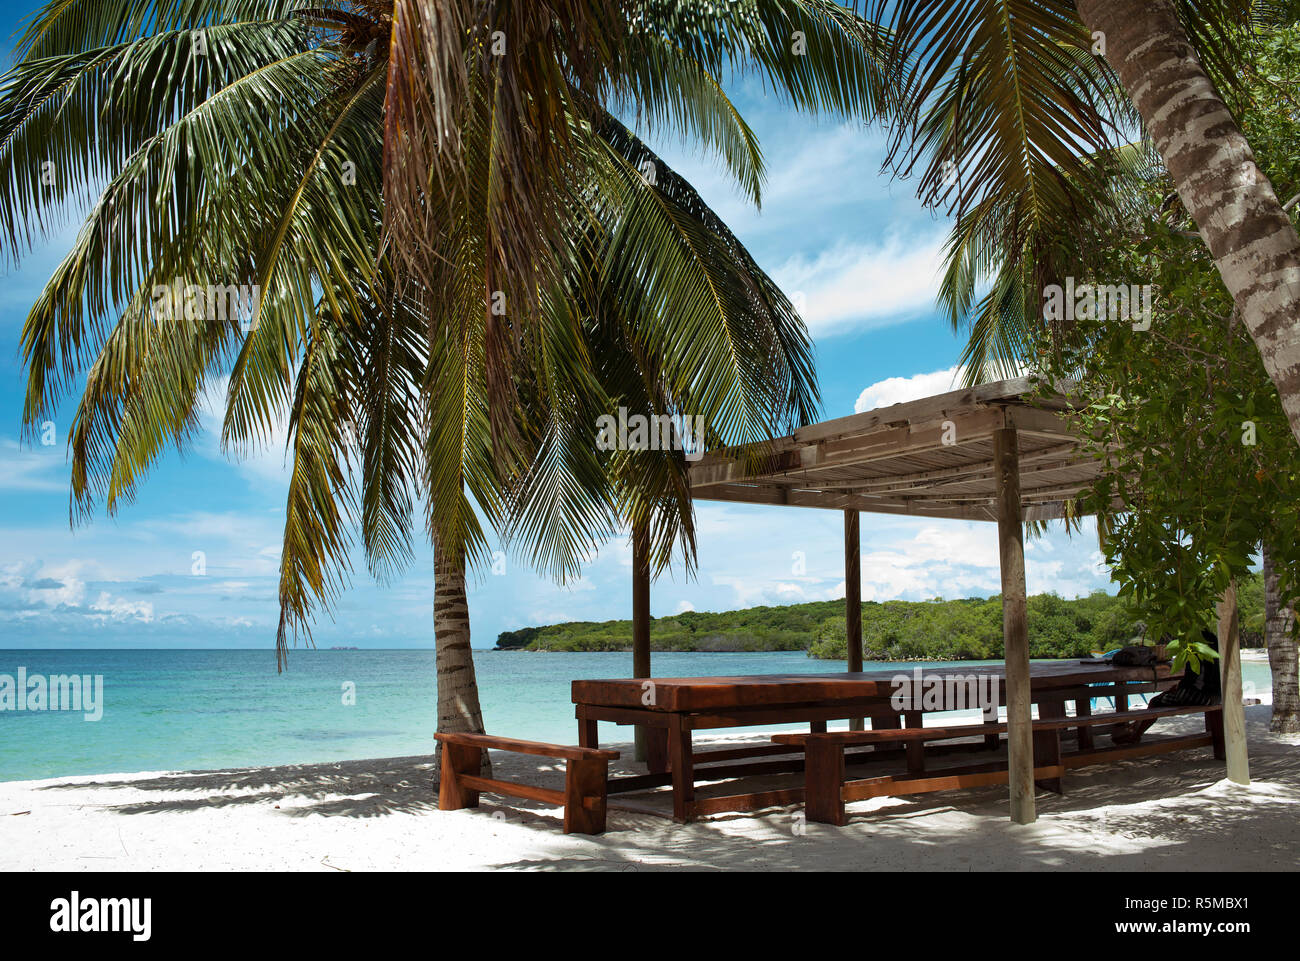 Pavillon, Palmen und reinem Wasser. Die privaten Playa Azul ist ein tropisches Paradies Strand, Teil der Isla Barú. Cartagena de Indias, Kolumbien. Okt 2018 Stockfoto